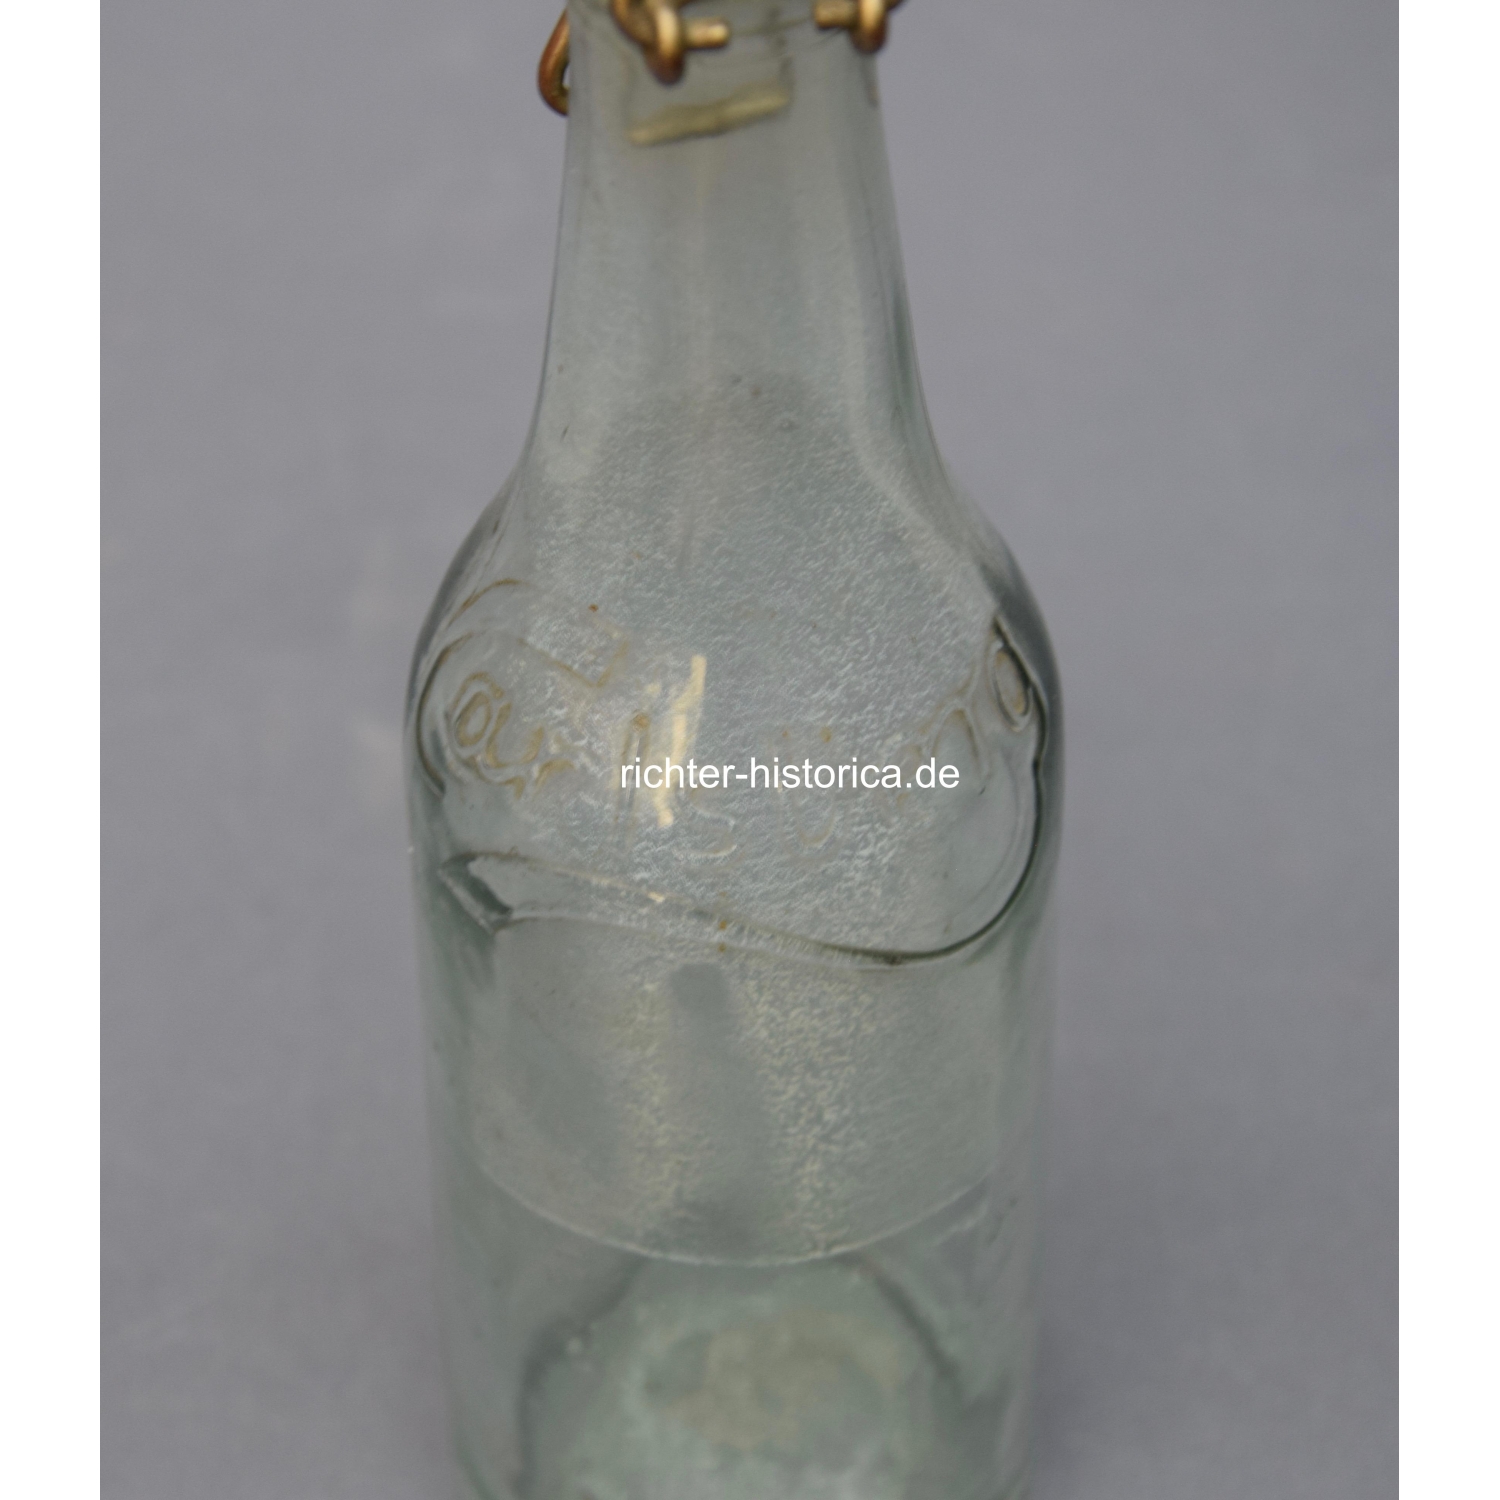 2.Weltkrieg Glasflasche "Carlsberg" mit HK Sonnenrad